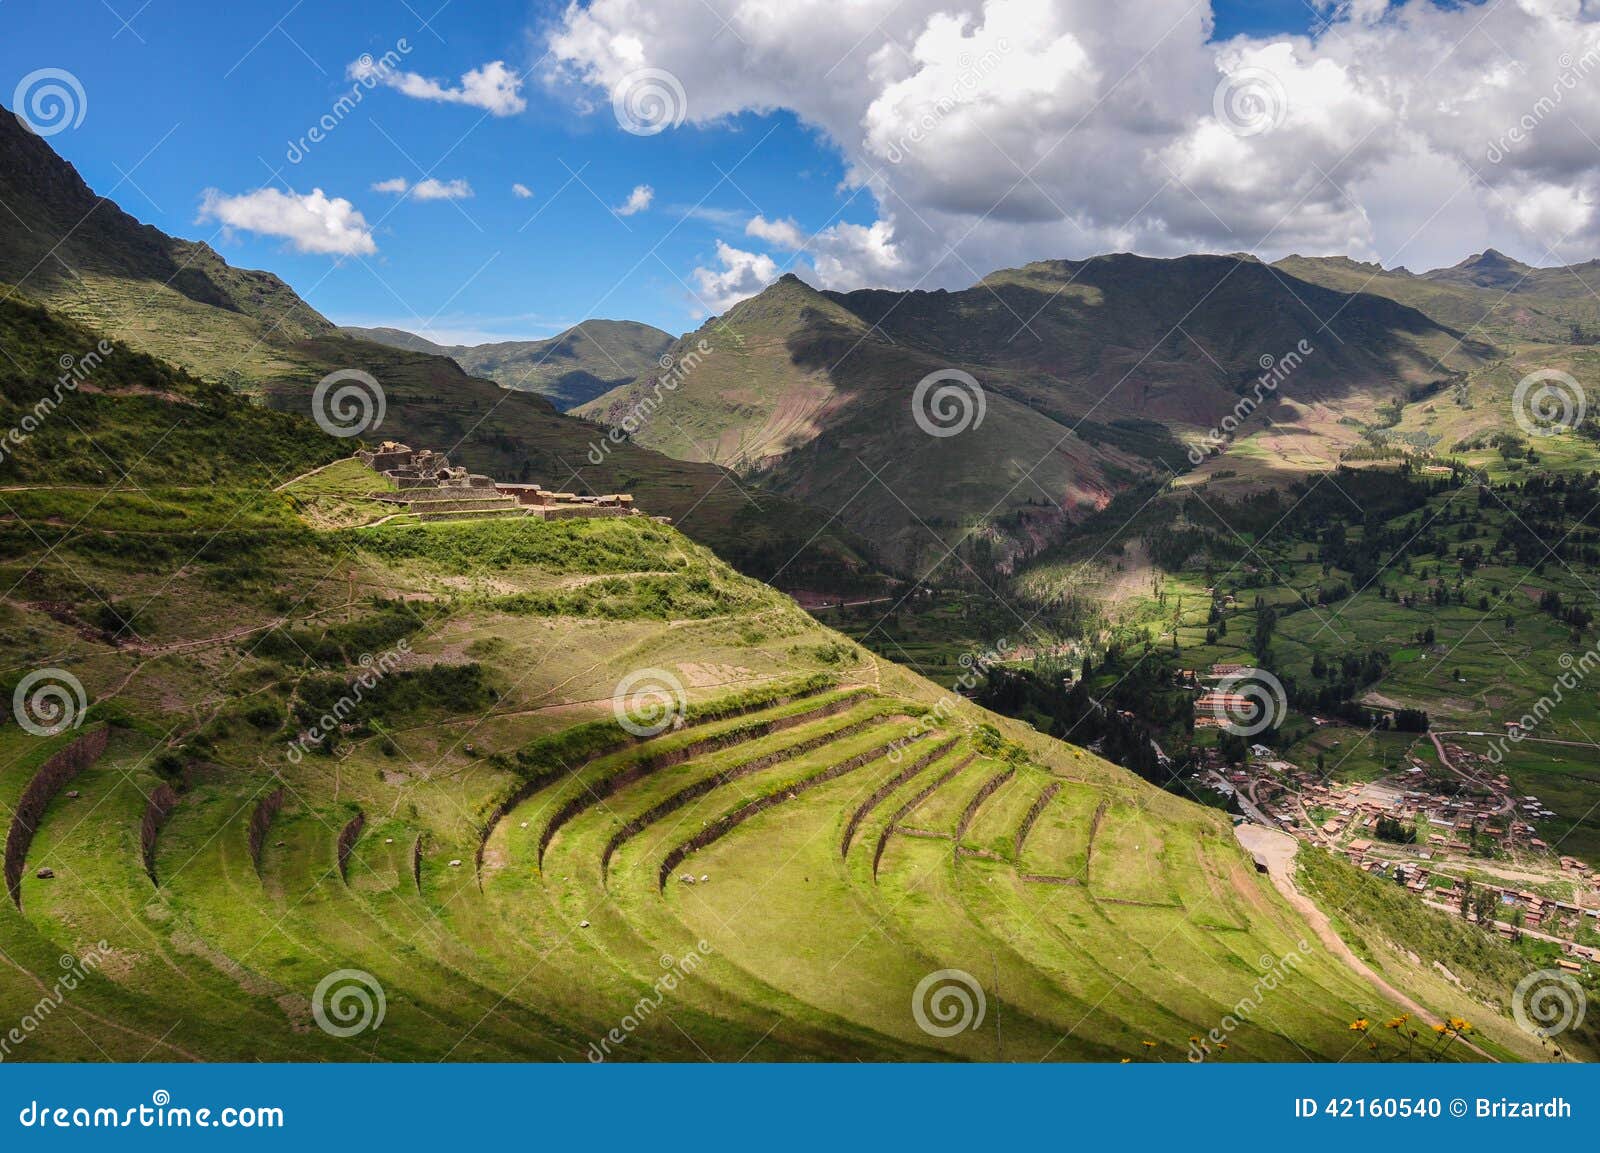 pisac incas ruins, sacred valley, peru